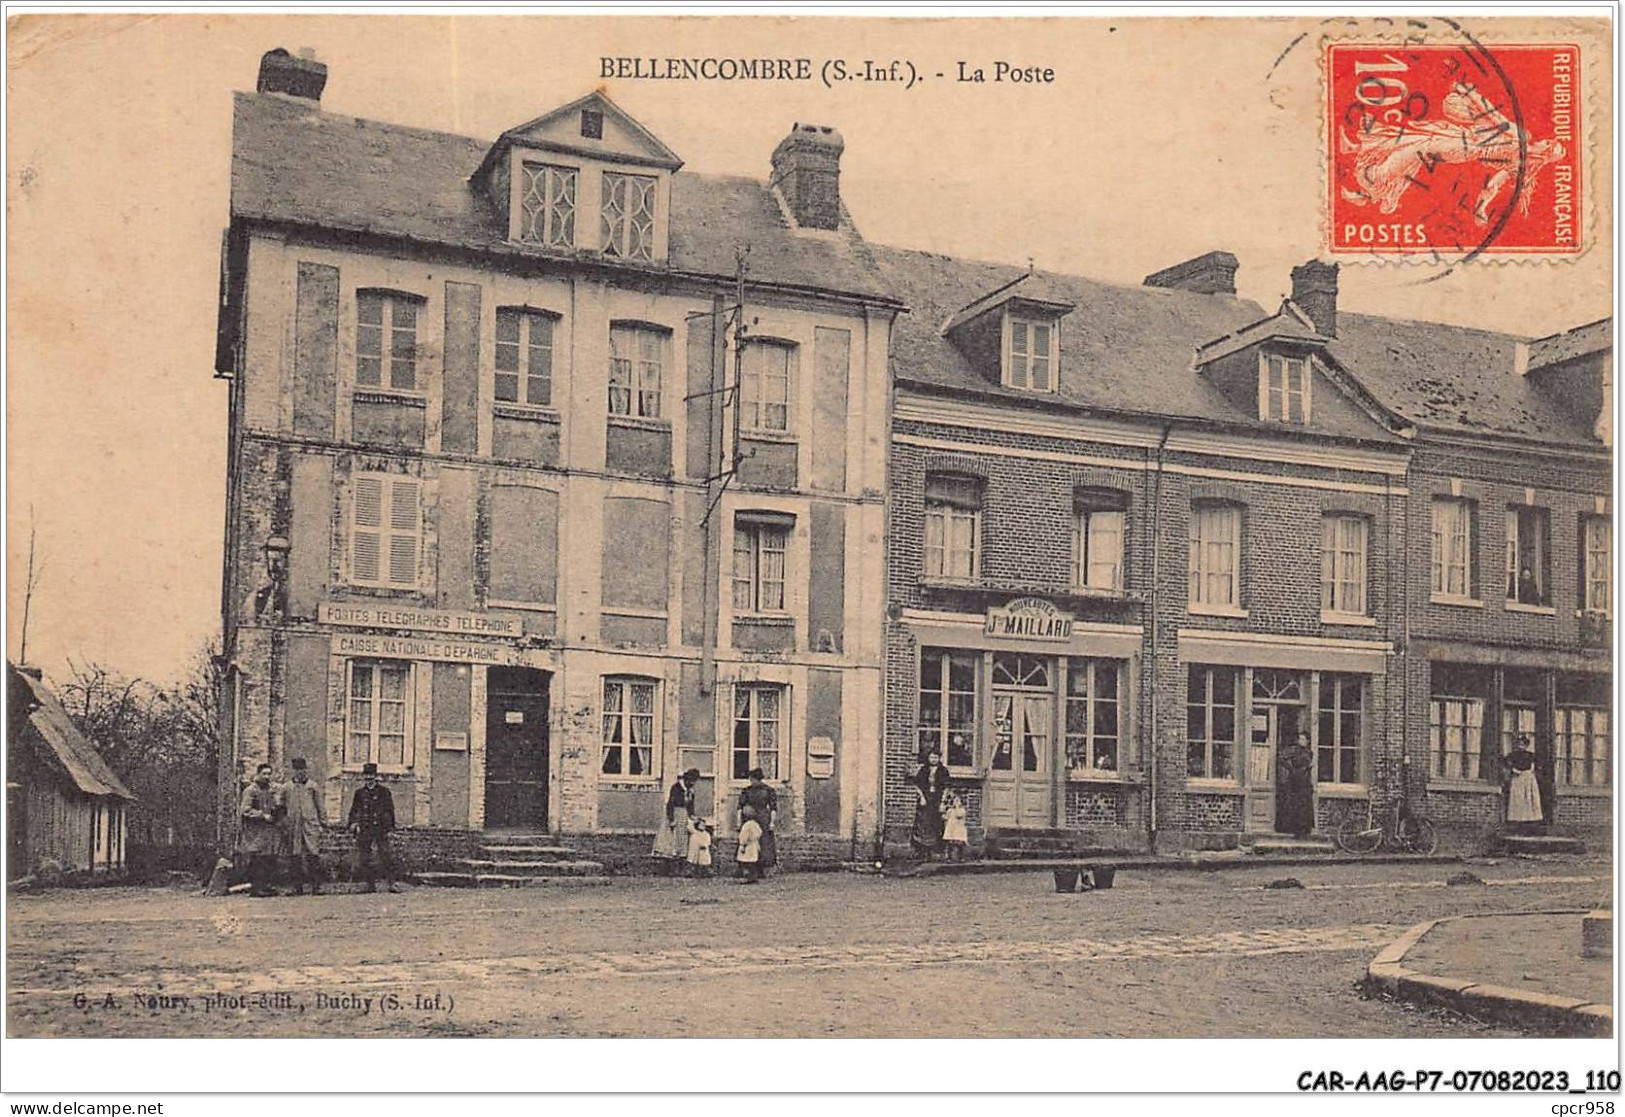 CAR-AAGP7-76-0626 - BELLECOMBRE - La Poste - Caisse Nationale D'Epargne  - Bellencombre